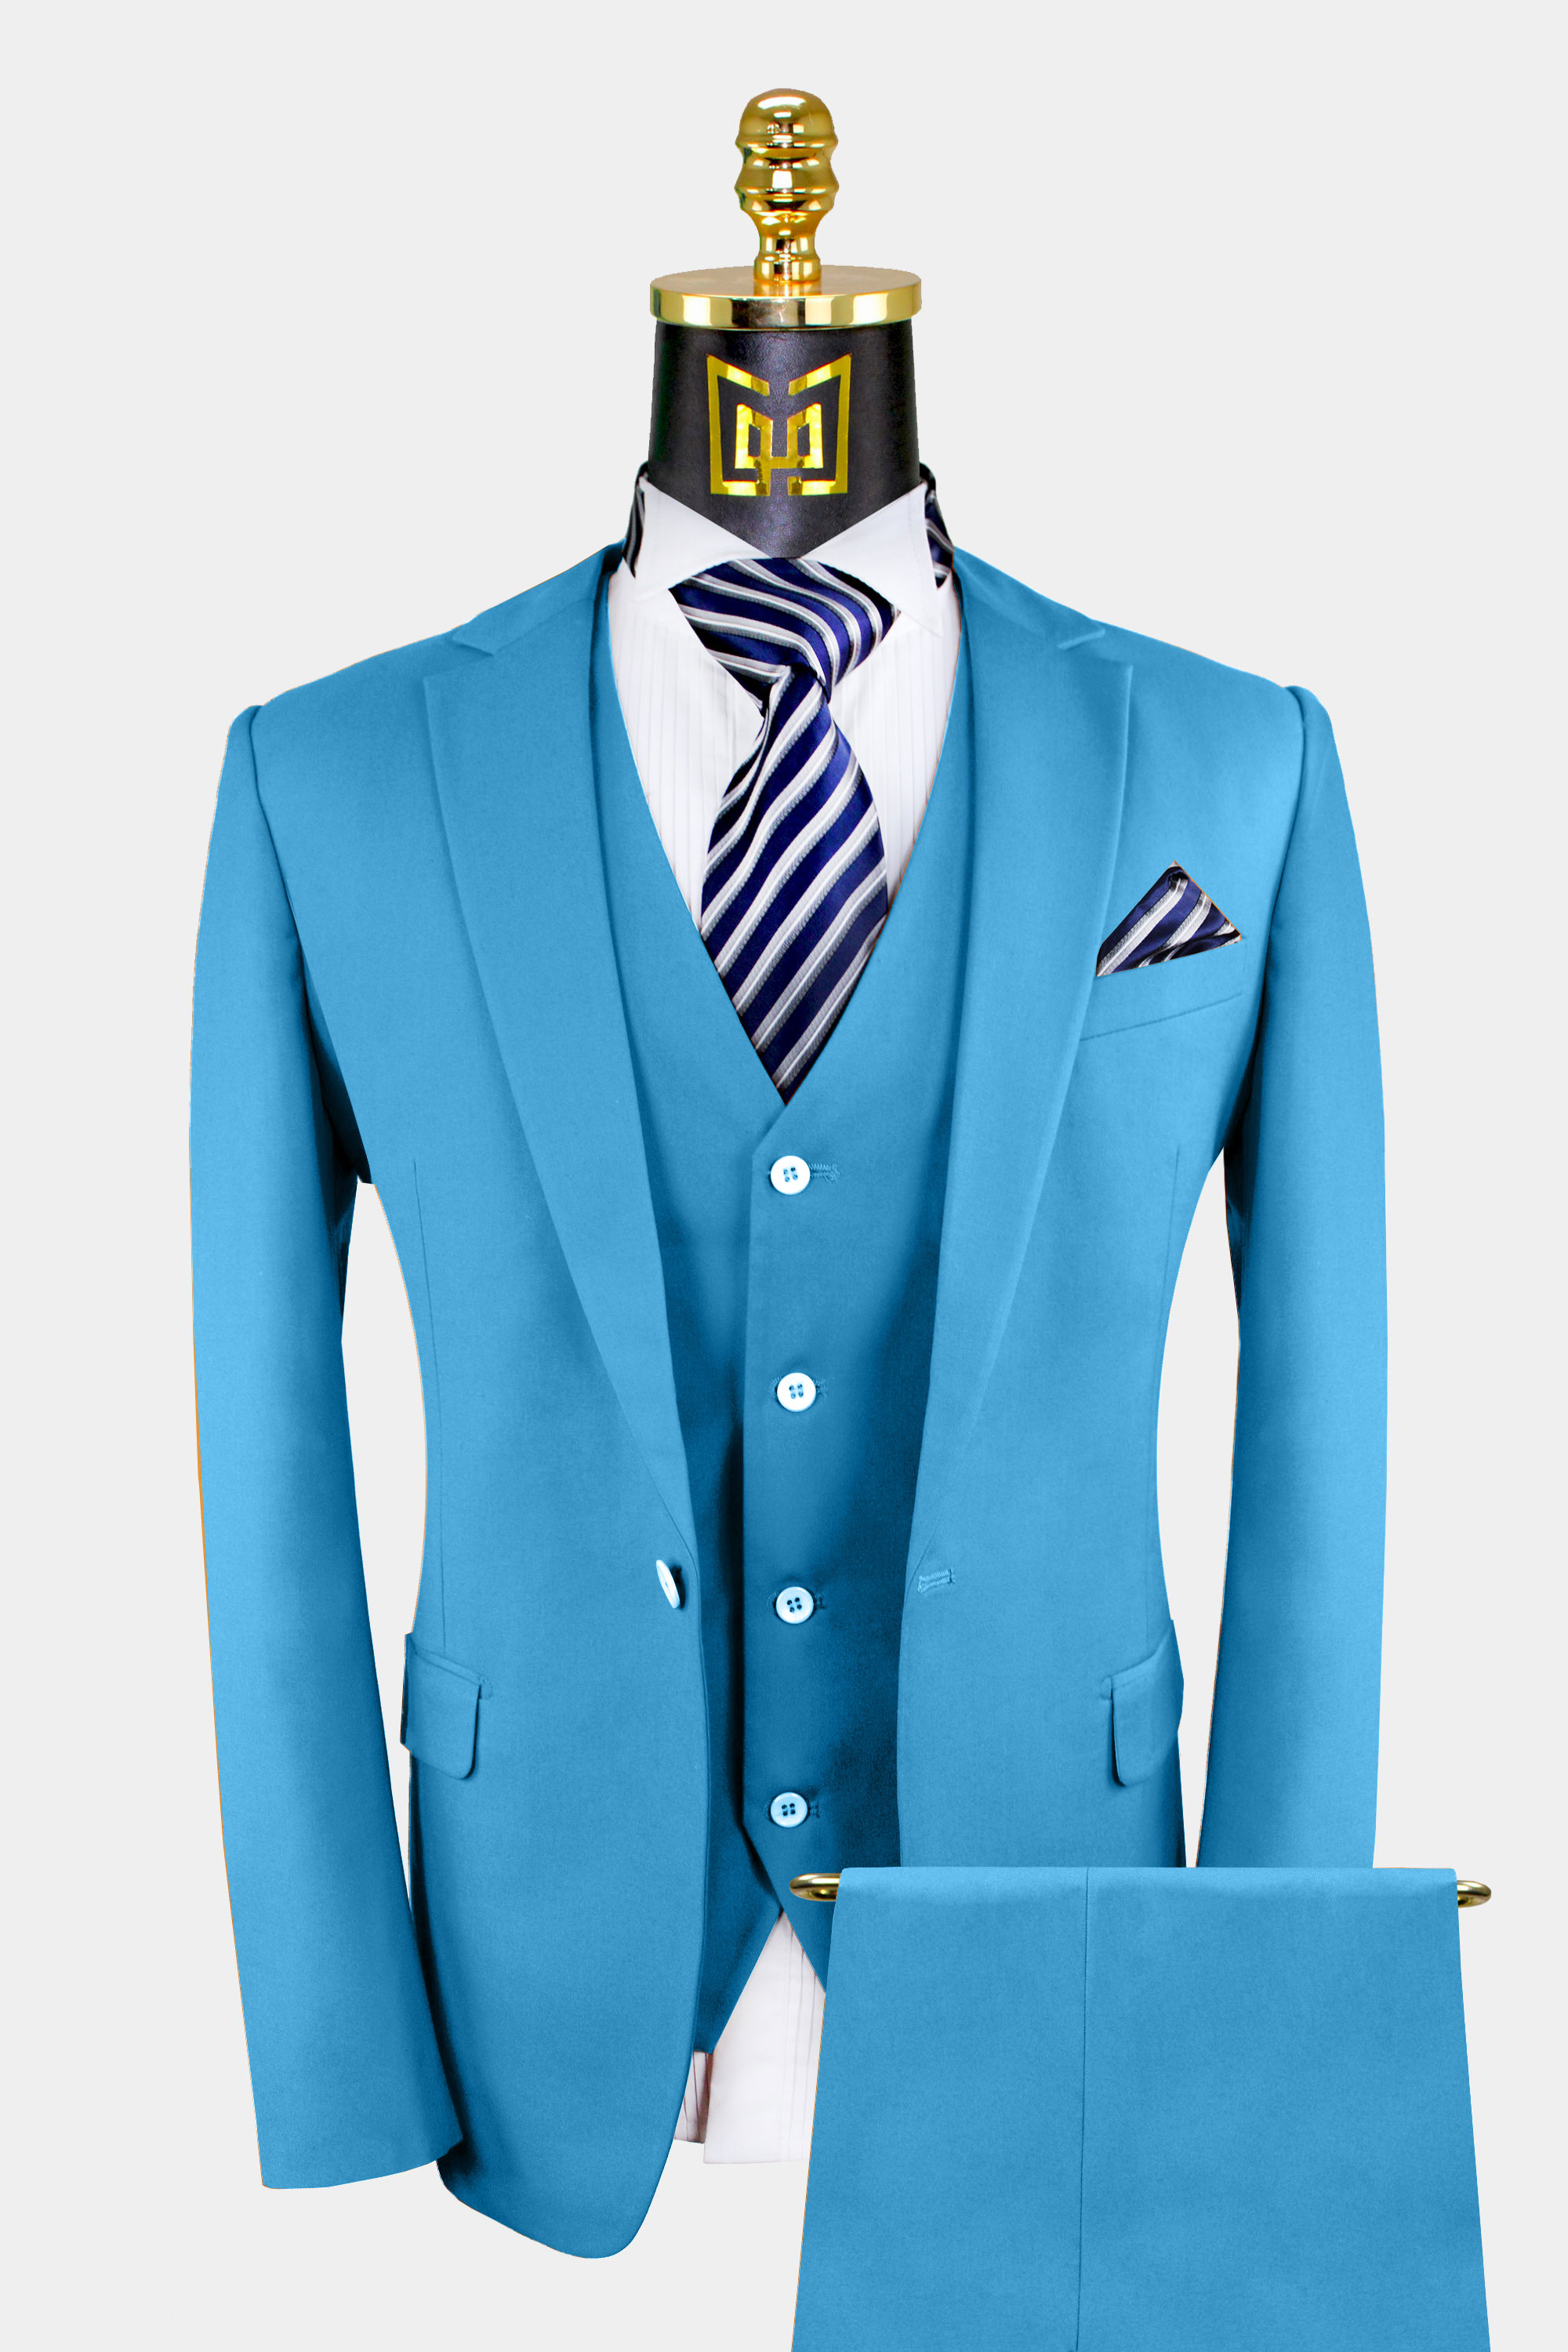 Men's Light Blue Suit - 3 Piece | Gentleman's Guru